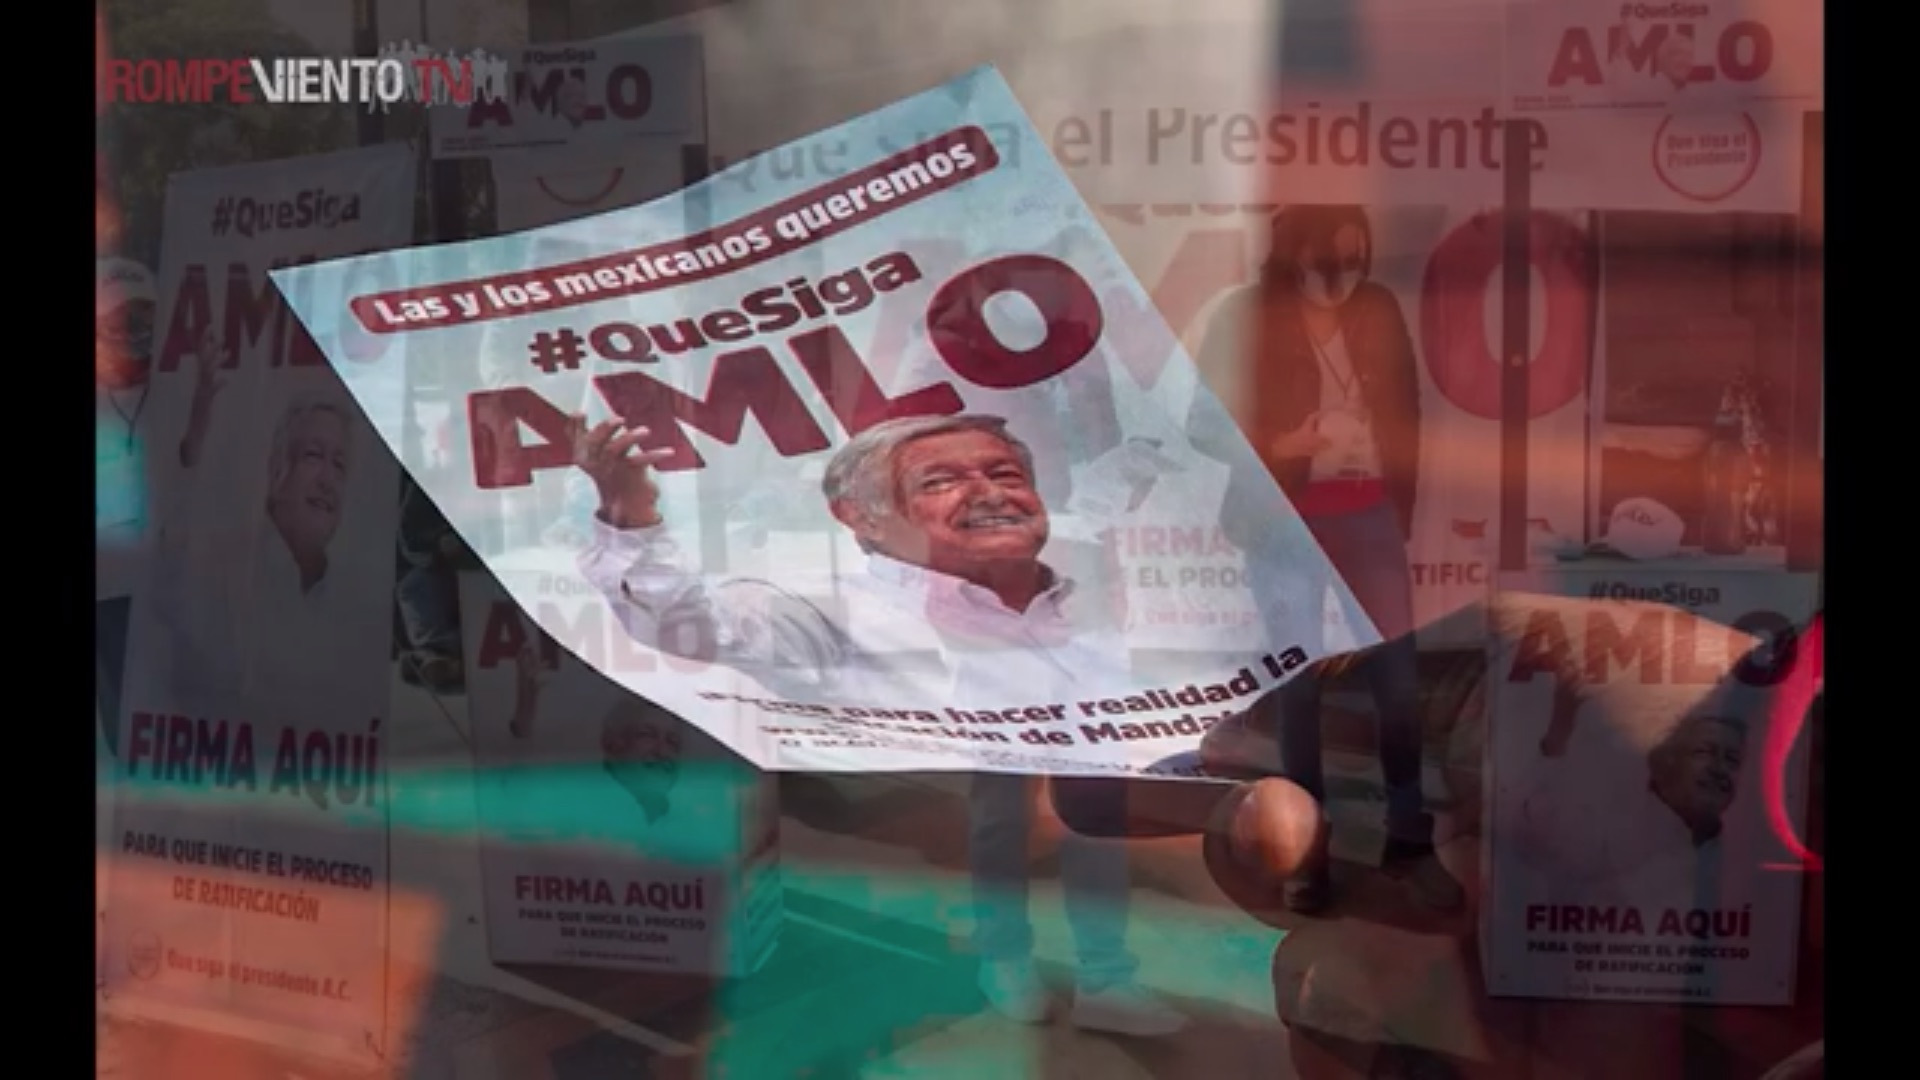 La ratificación de mandato ❘ Muere Desmond Tutu ❘ Pietro Ameglio ❘ Videocolumna